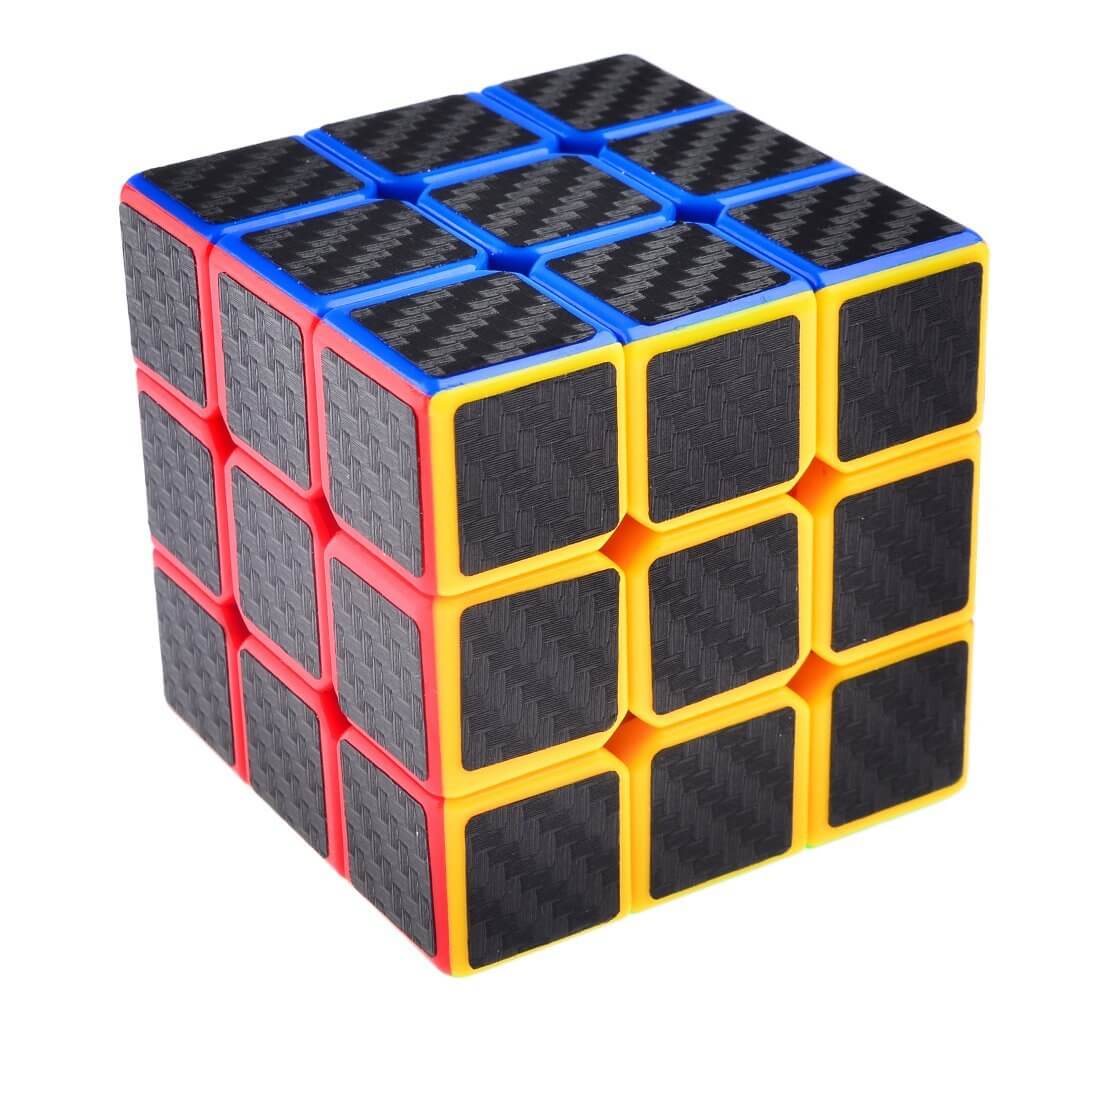 Cube solve. Кубик Рубика 3х3. Кубик Рубика 3 на 3. Кубик рубик 3 на 3. Скоростной кубик Рубика 3х3.